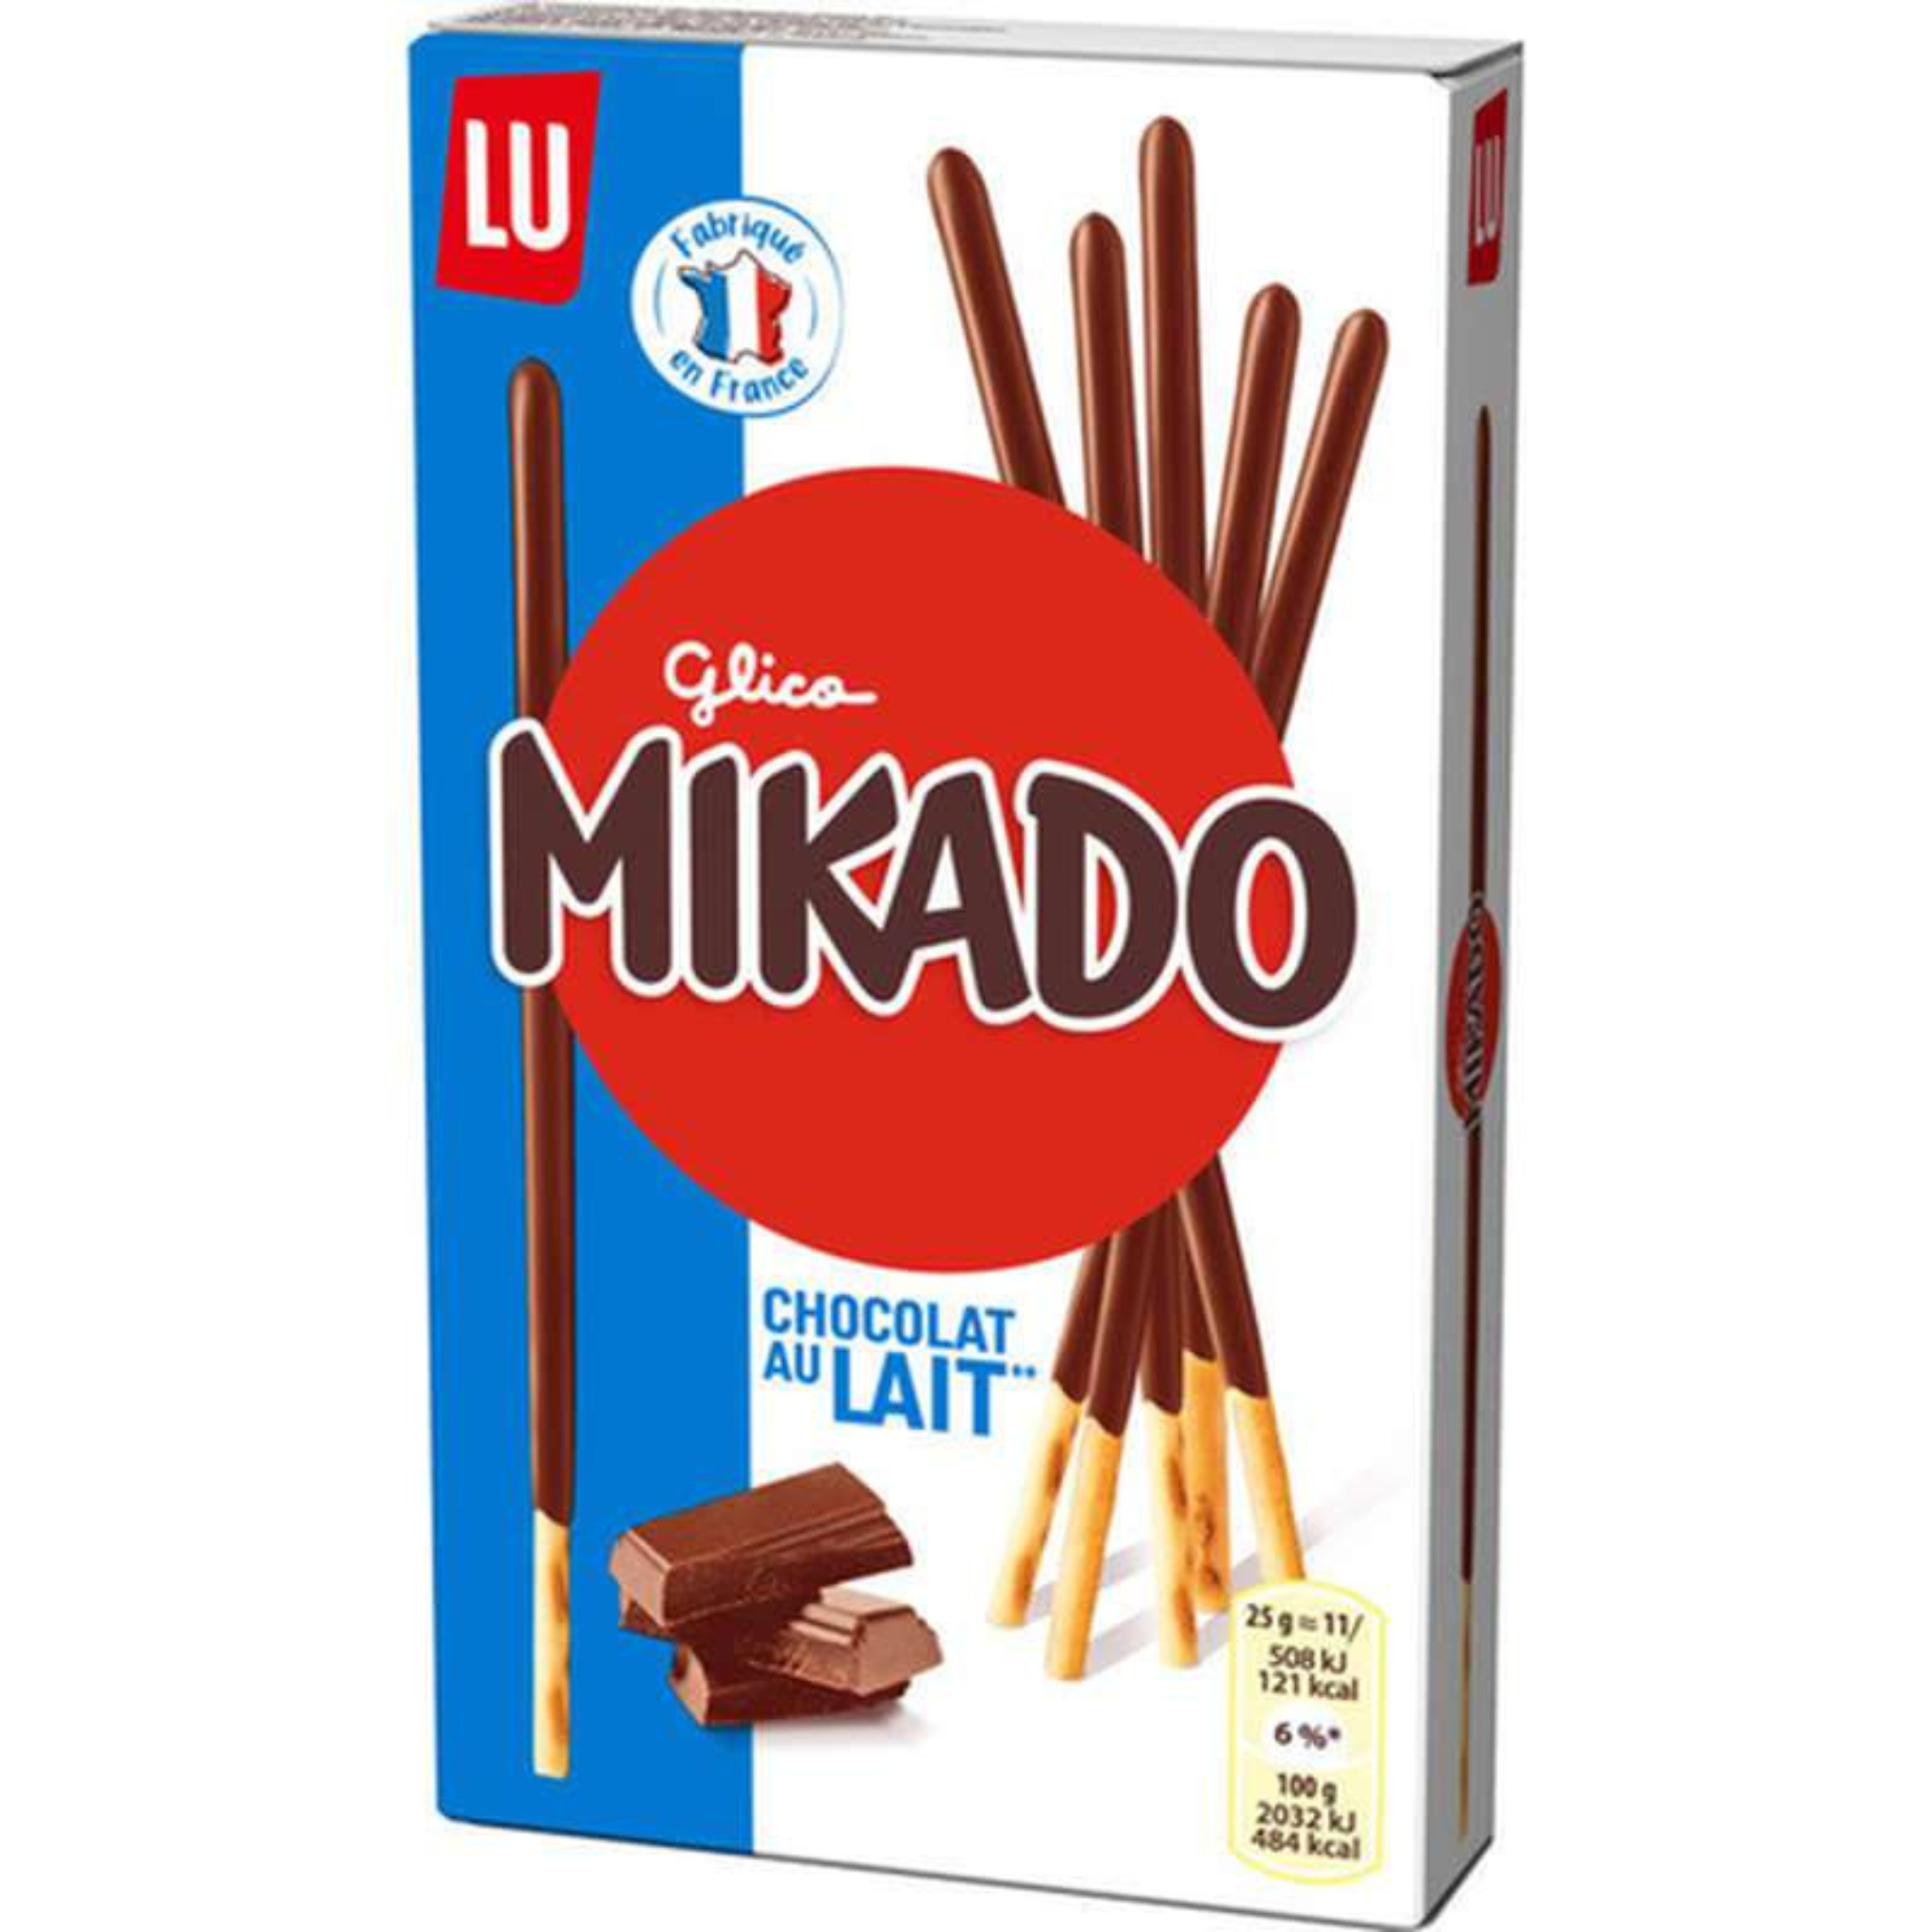 Mikado chocolat au lait, un biscuit fin et croquant enrobé d'un délicieux nappage au chocolat au lait.